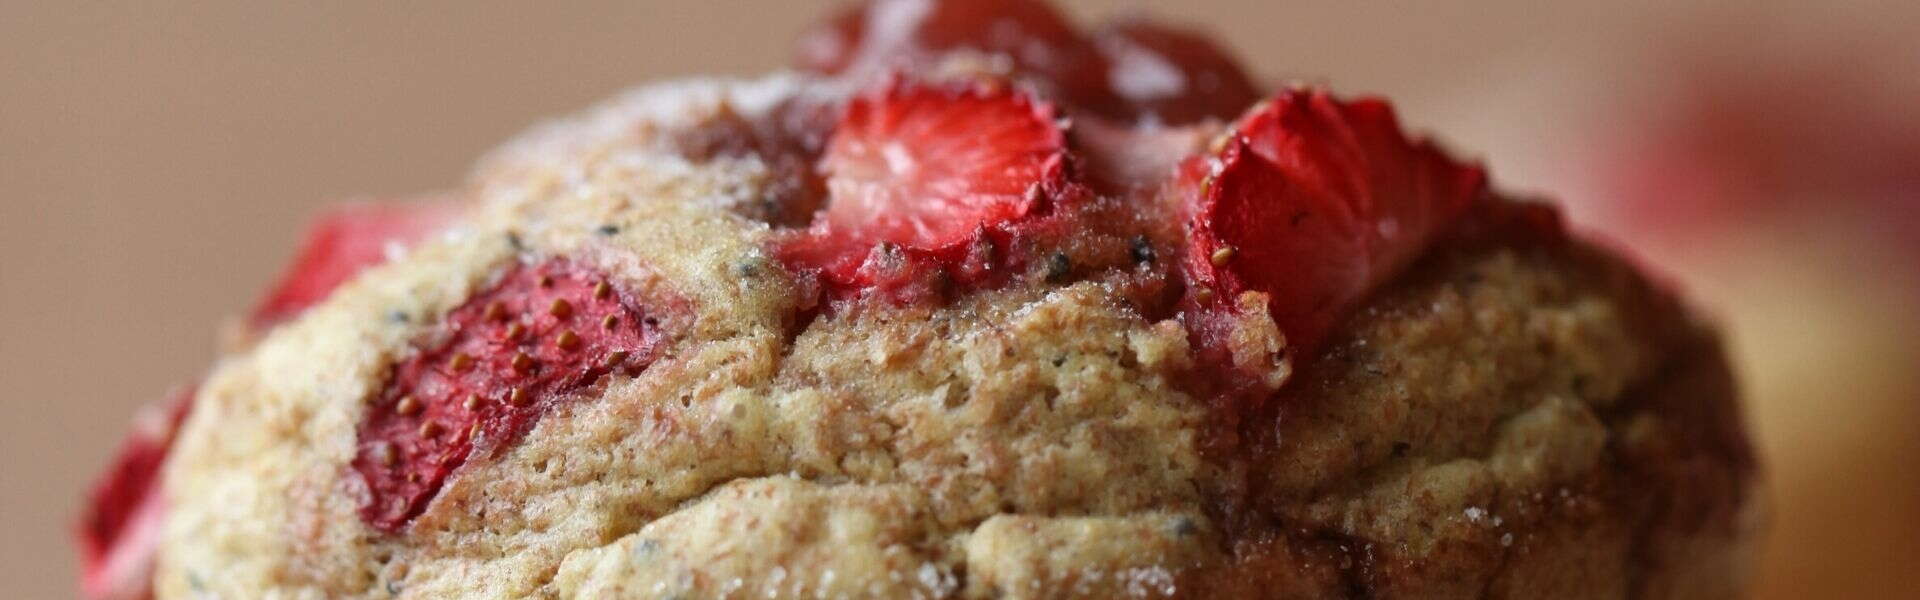 Recette de muffin complet aux fraises